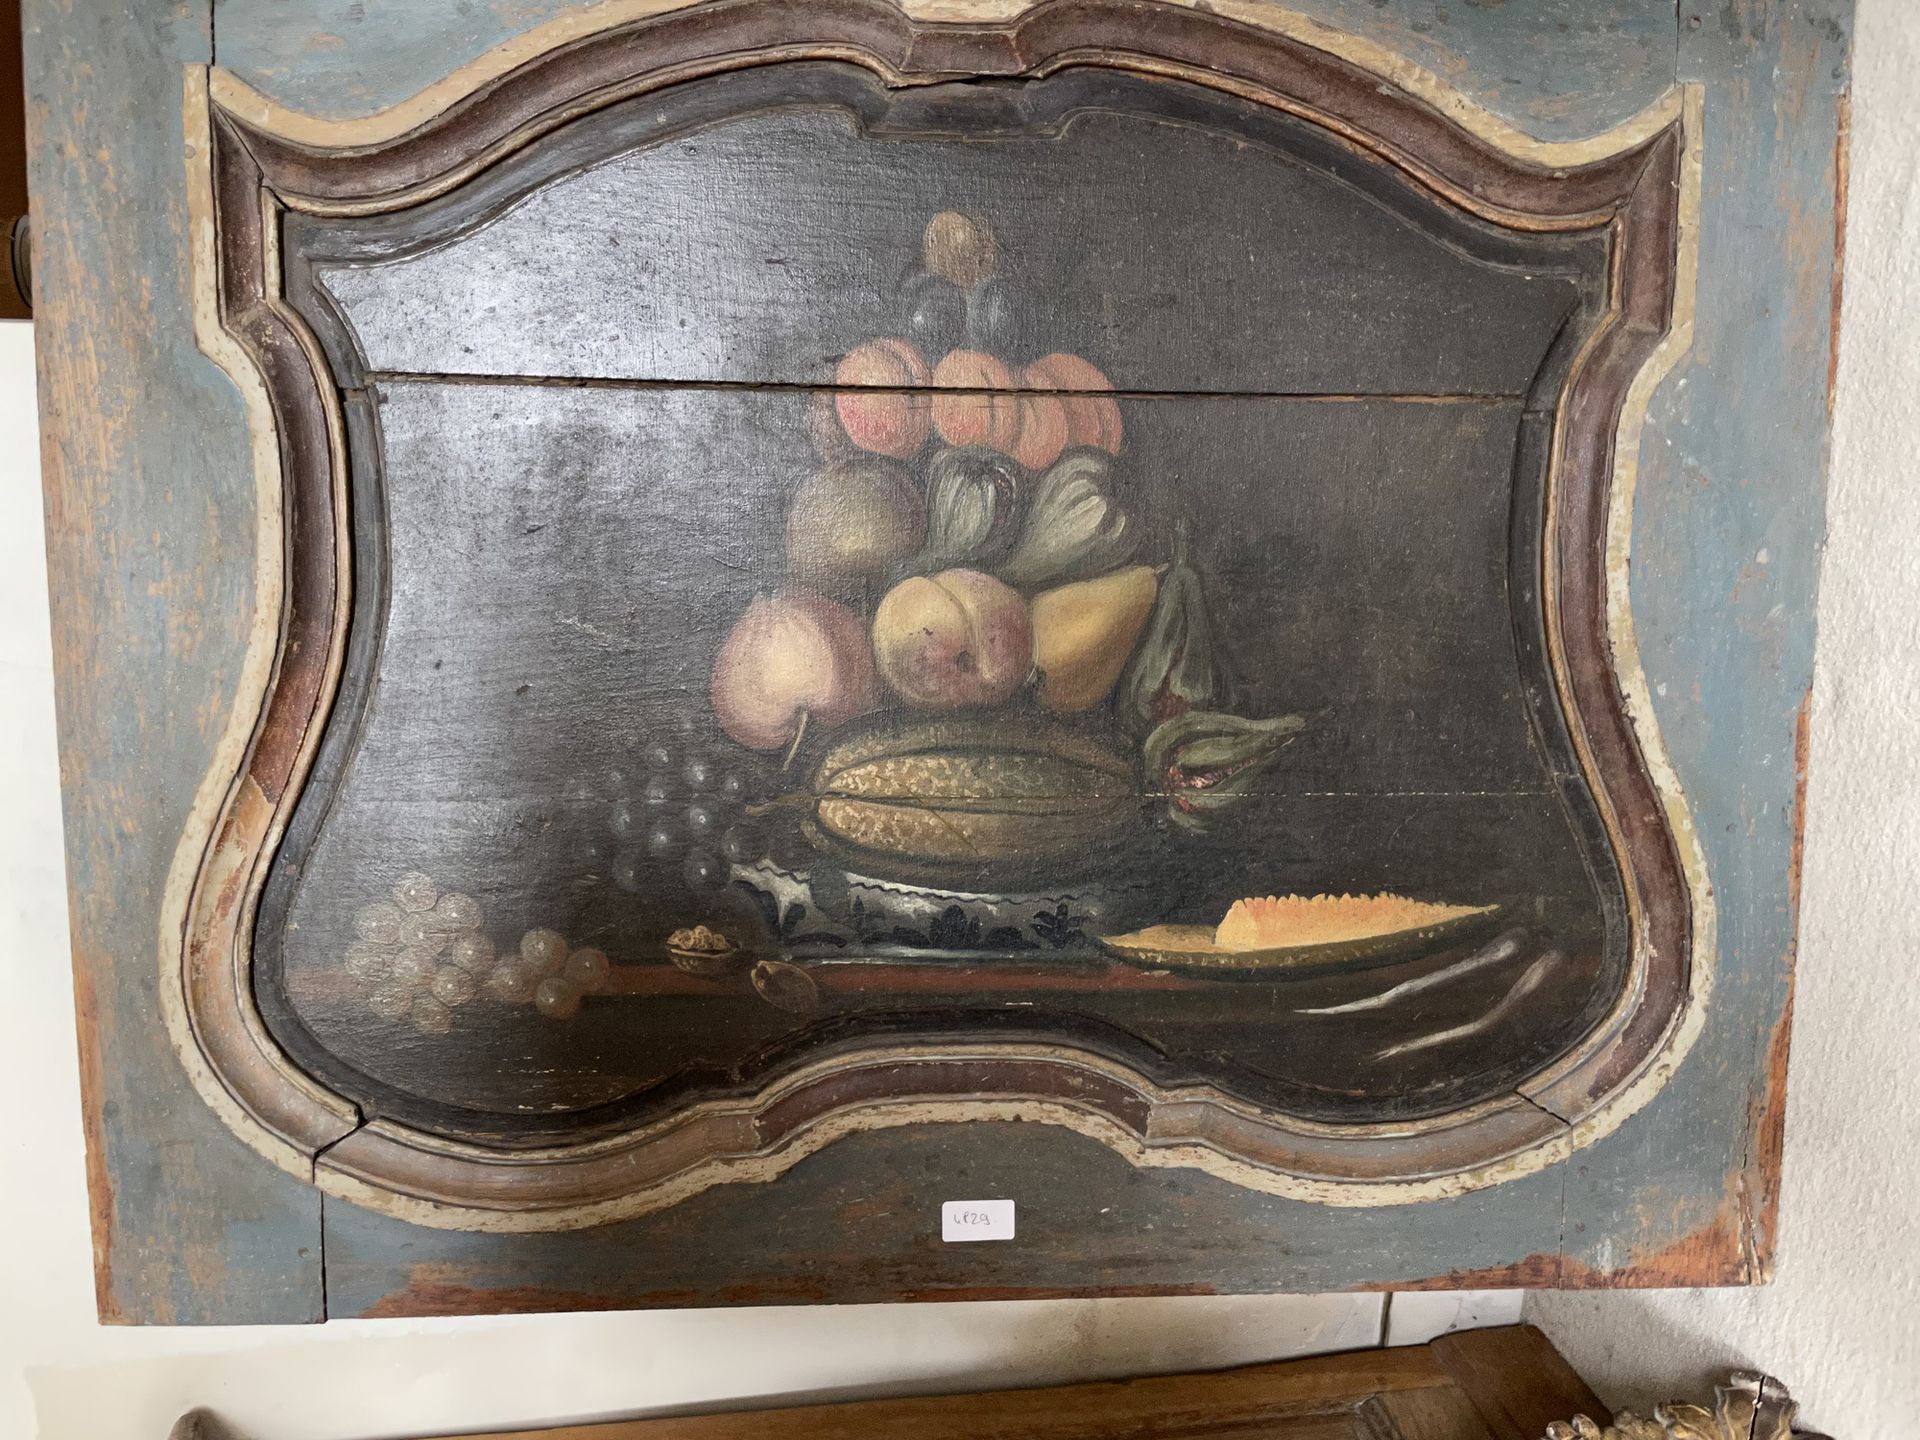 Null 装饰板
木制彩绘
带有静物装饰
18世纪
H.70厘米 - 宽89厘米